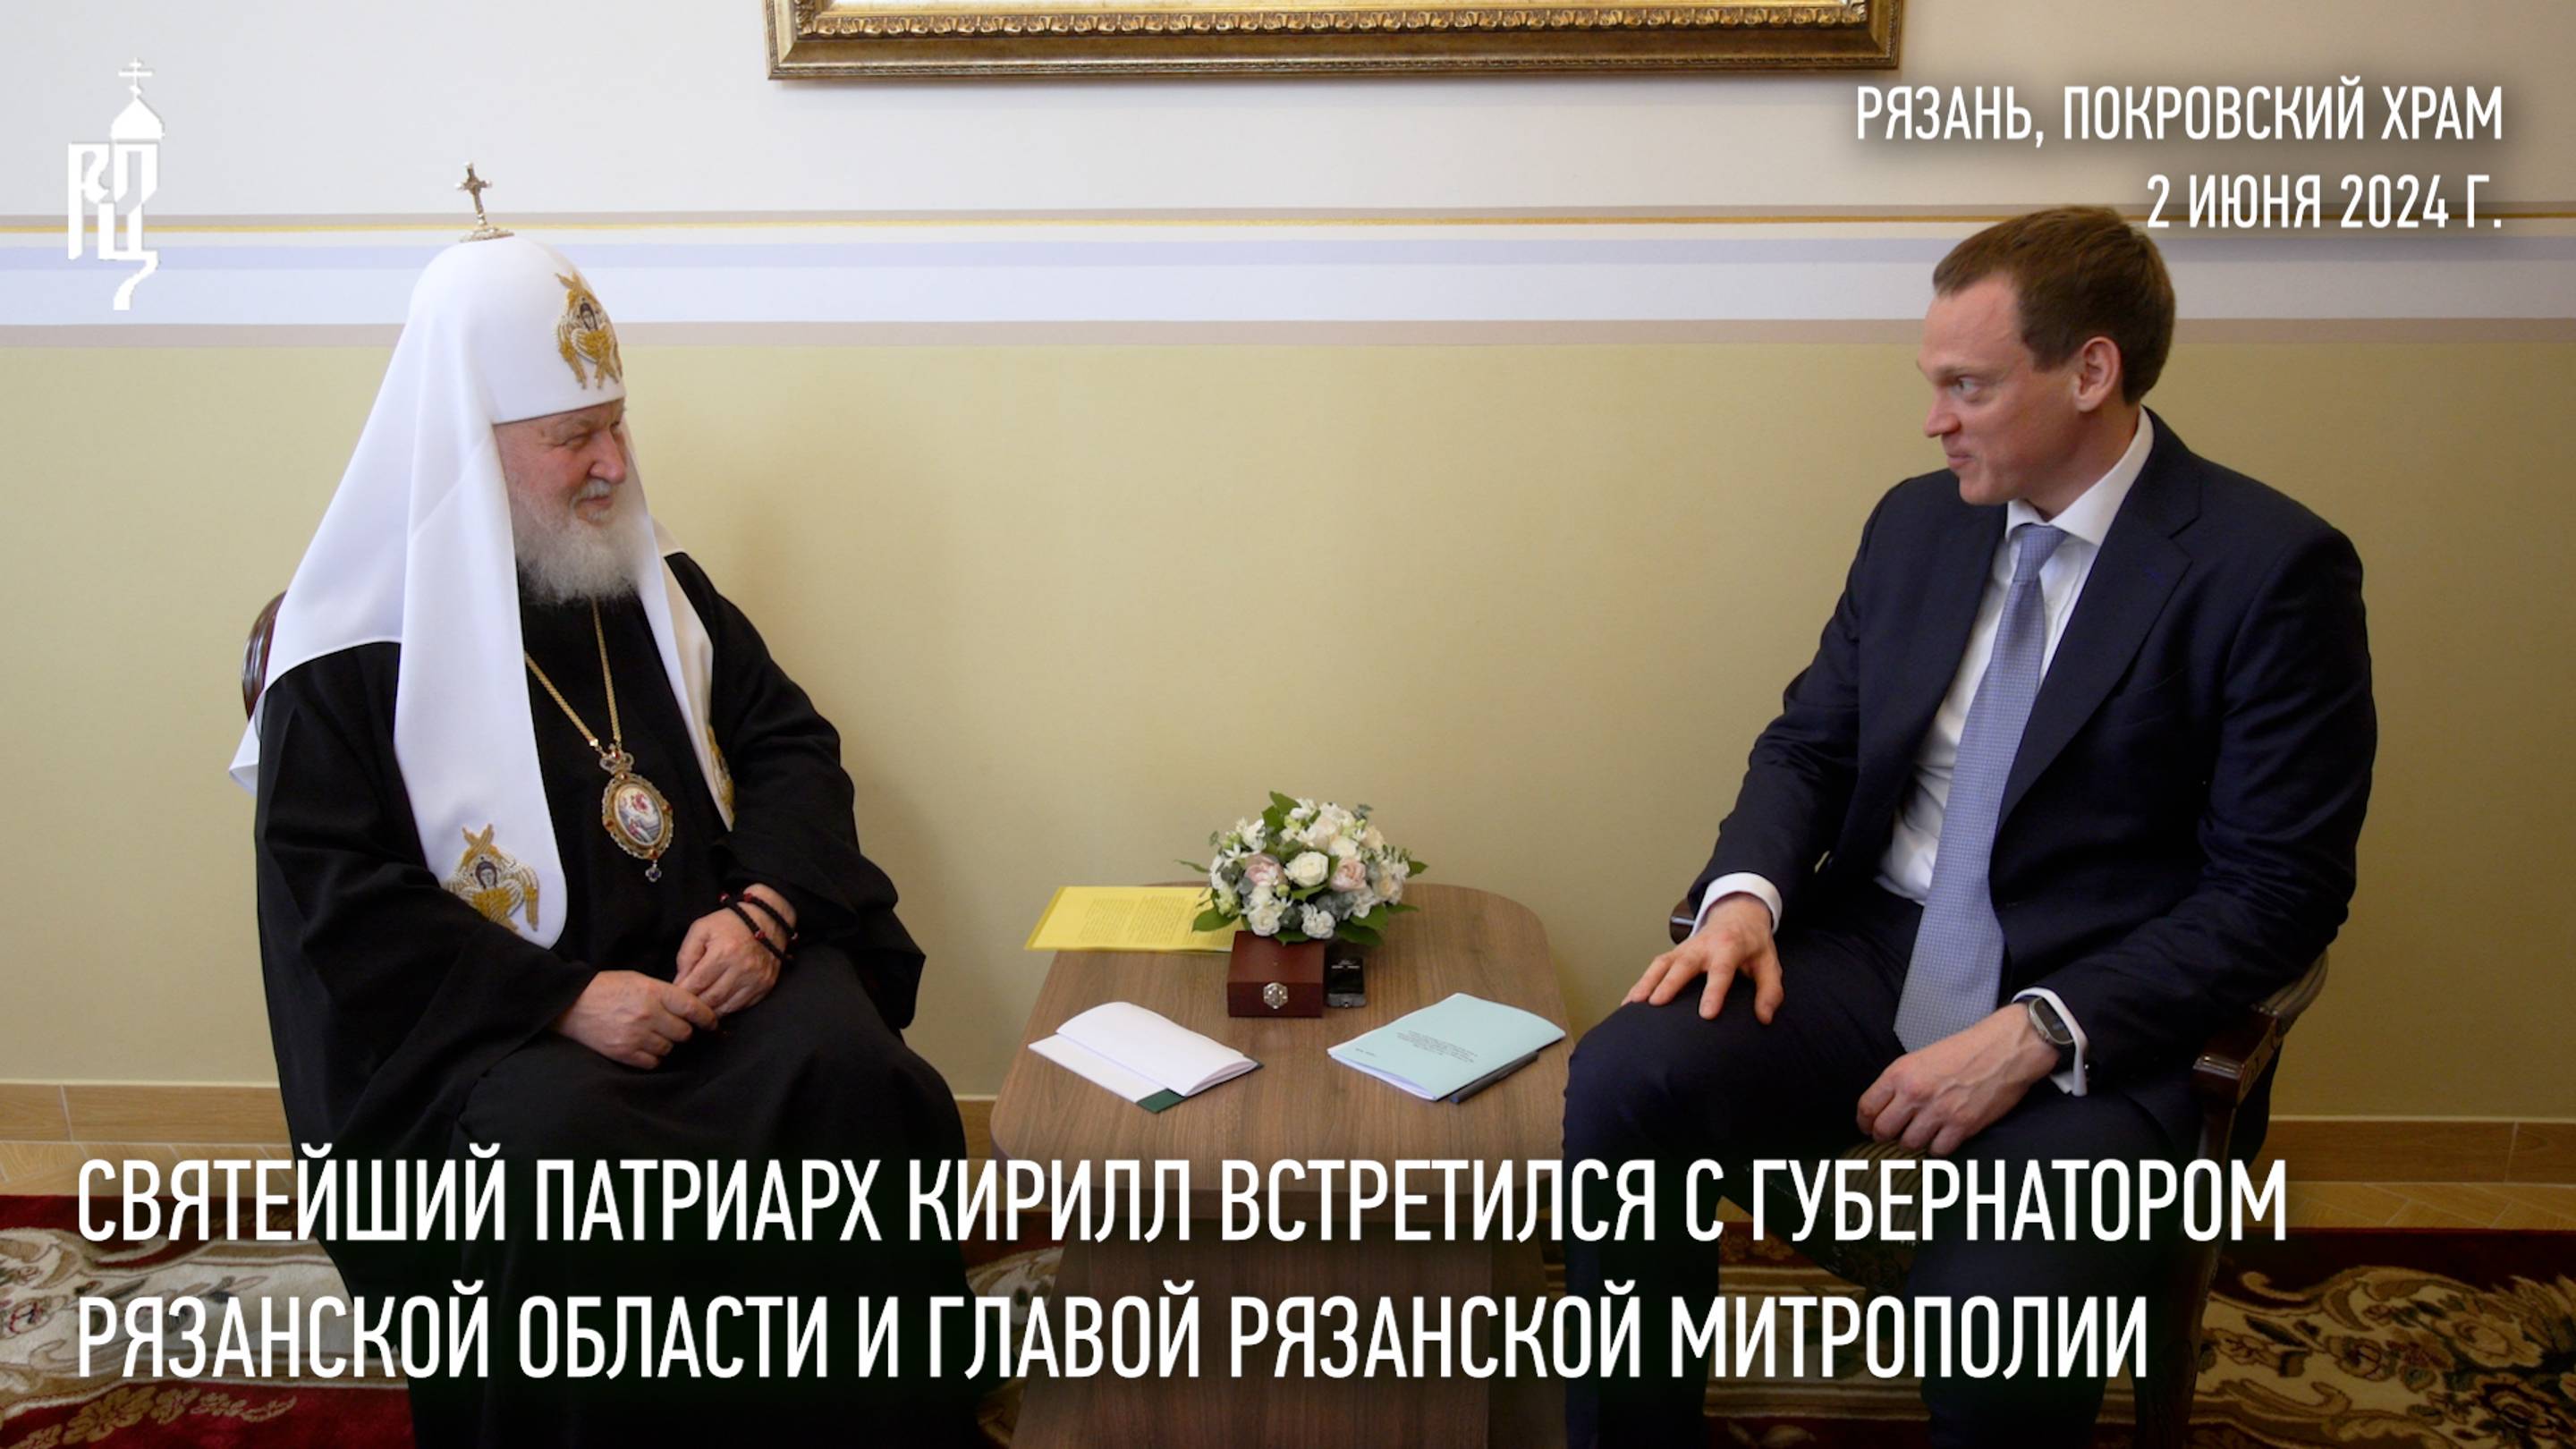 Святейший Патриарх Кирилл встретился с губернатором Рязанской области и главой Рязанской митрополии